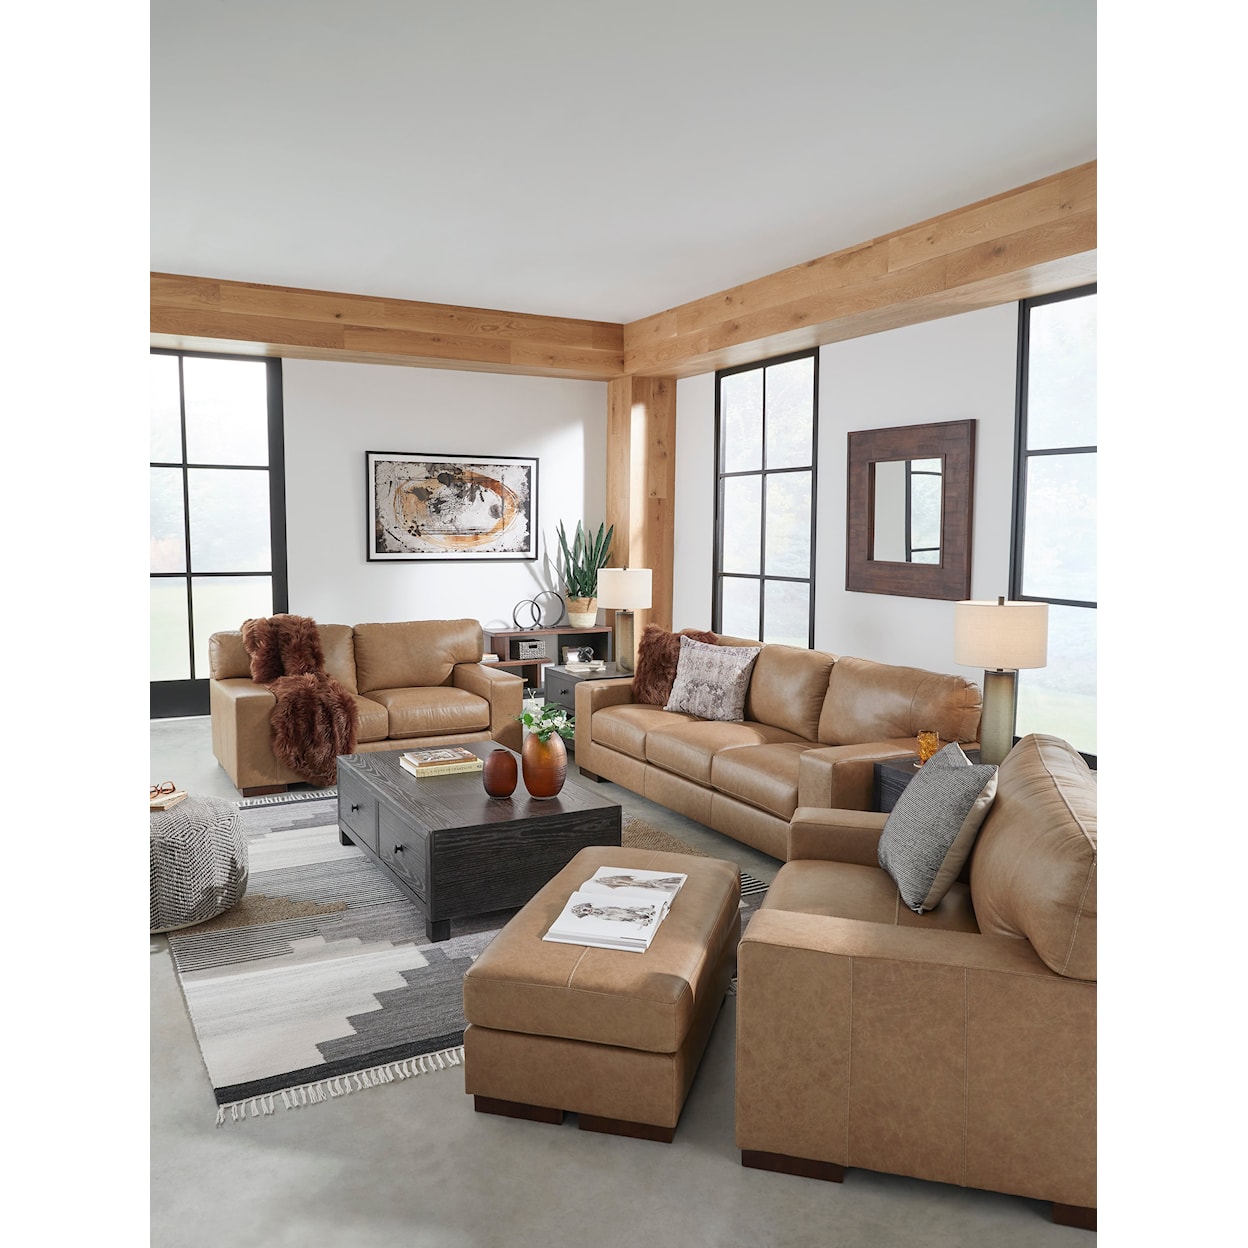 Michael Alan Select Lombardia Living Room Set